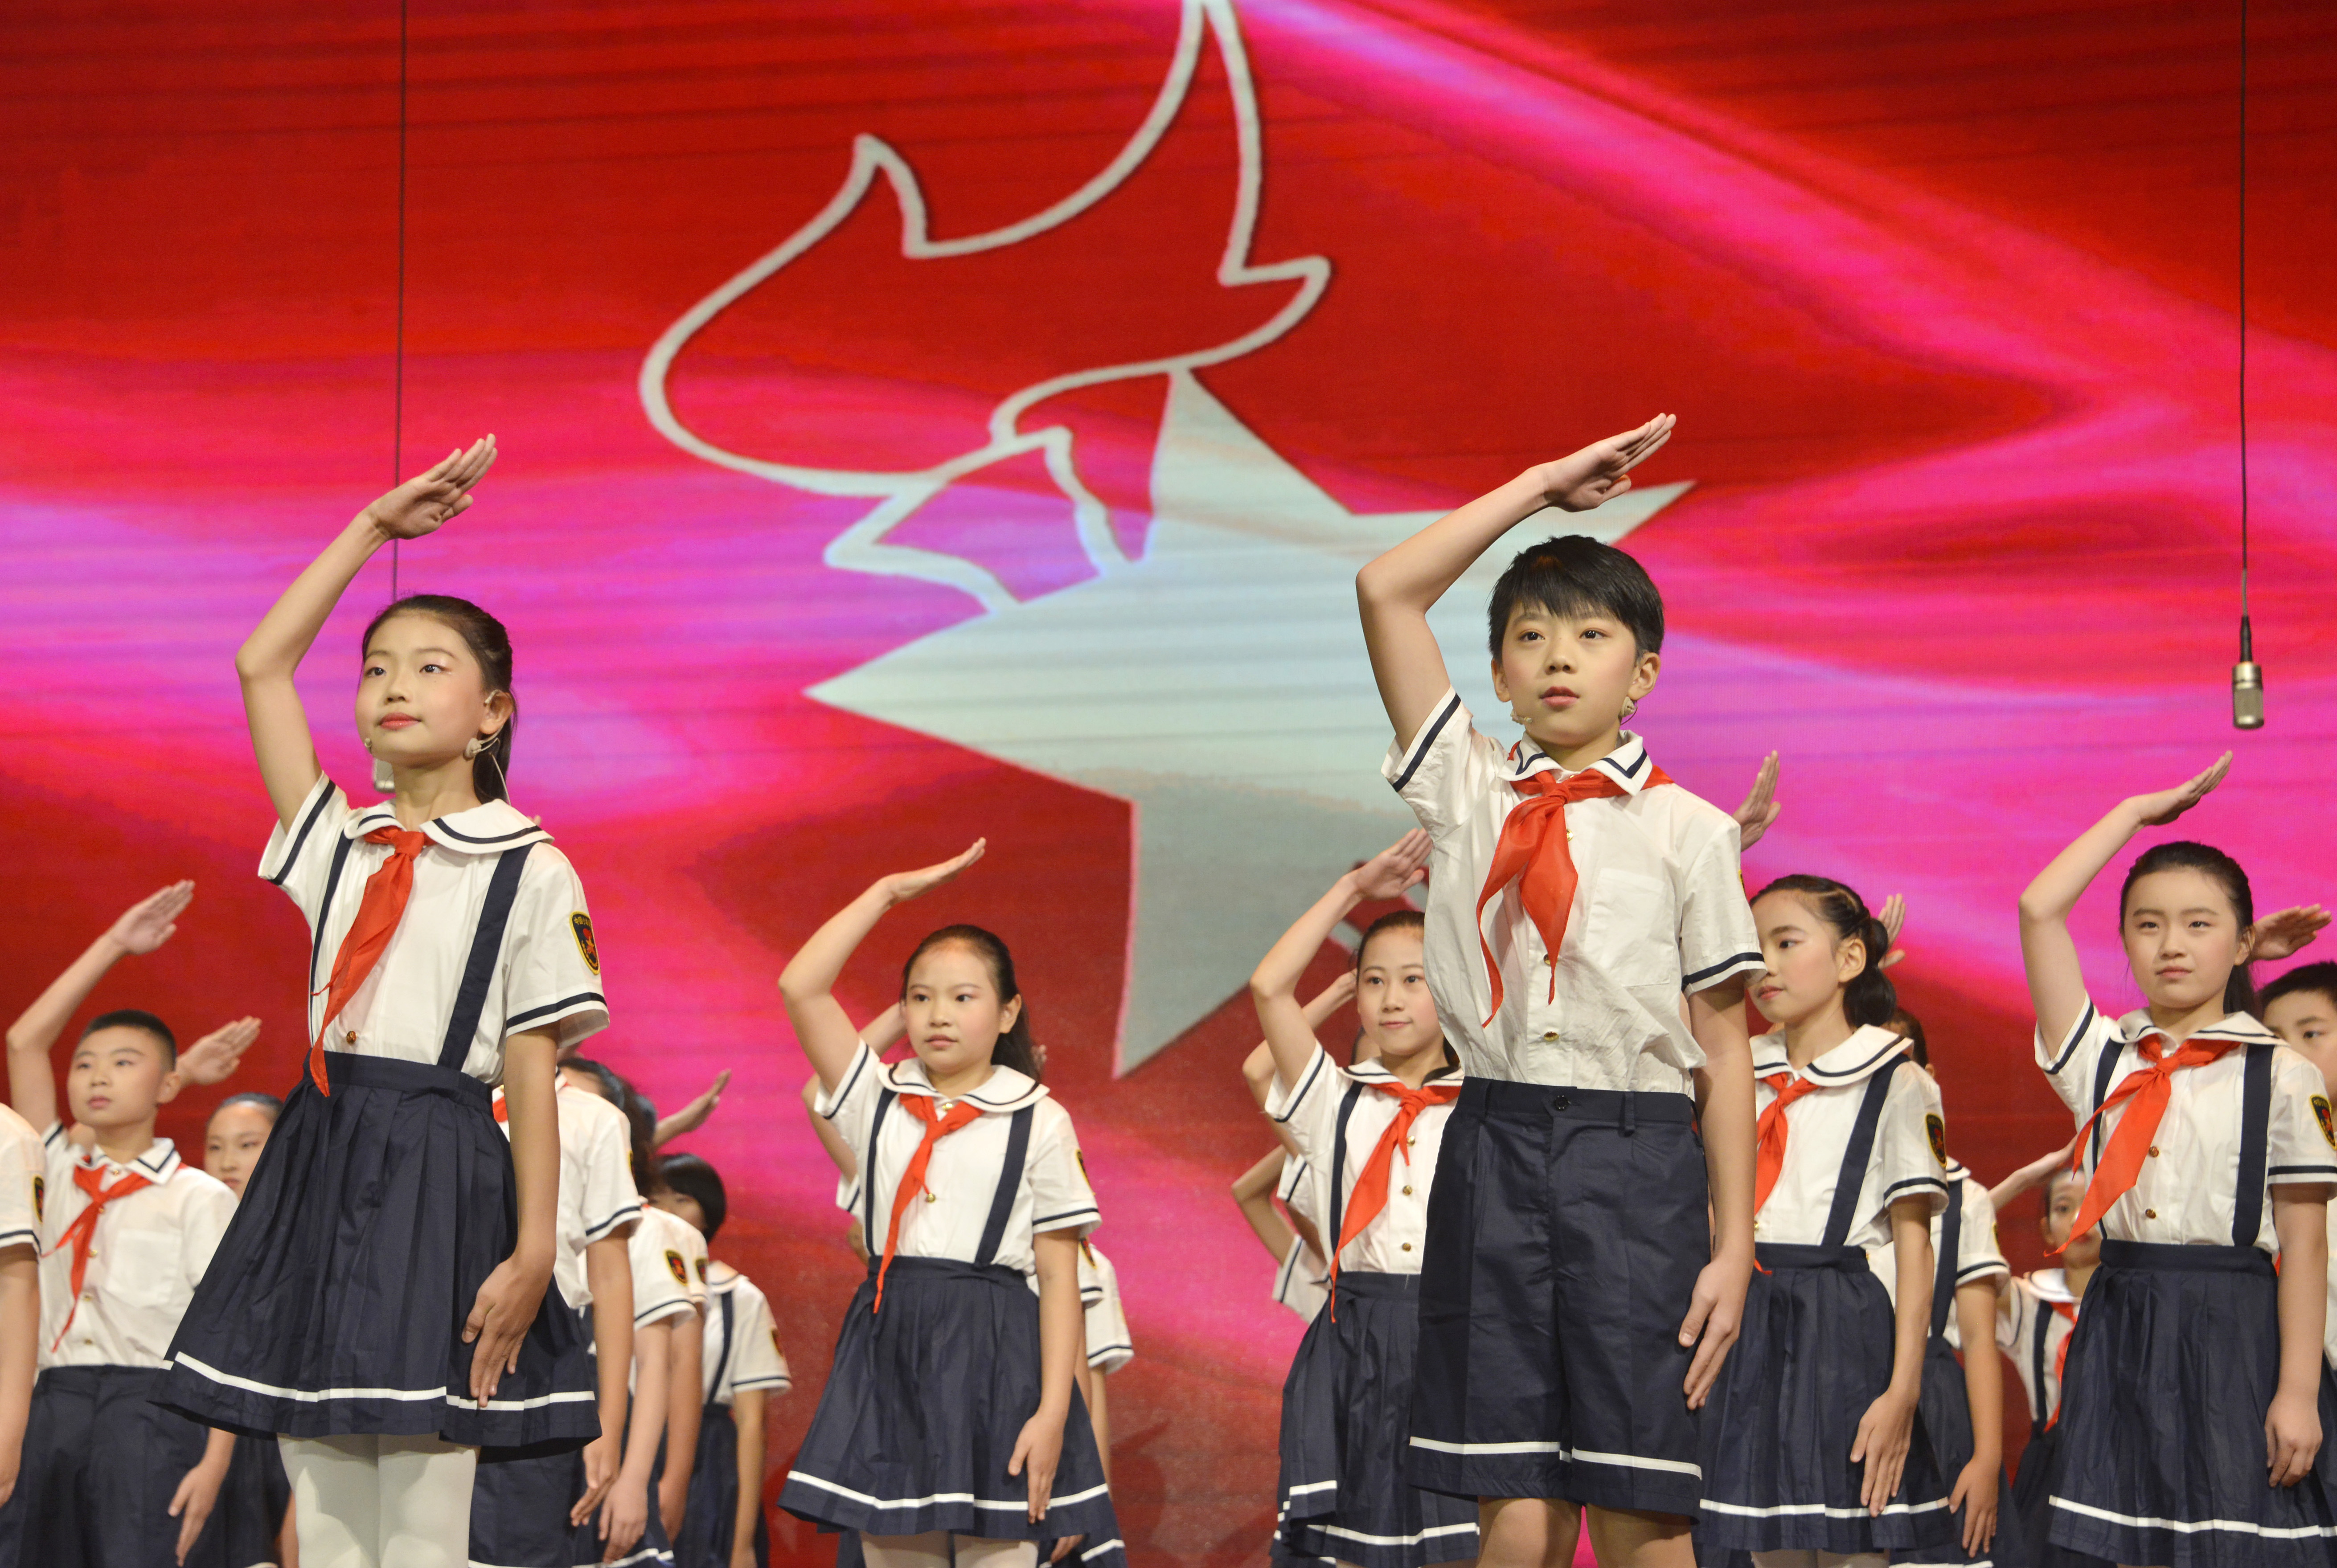 继承革命先辈的光荣传统……在新中国成立70周年,少先队建队70周年之